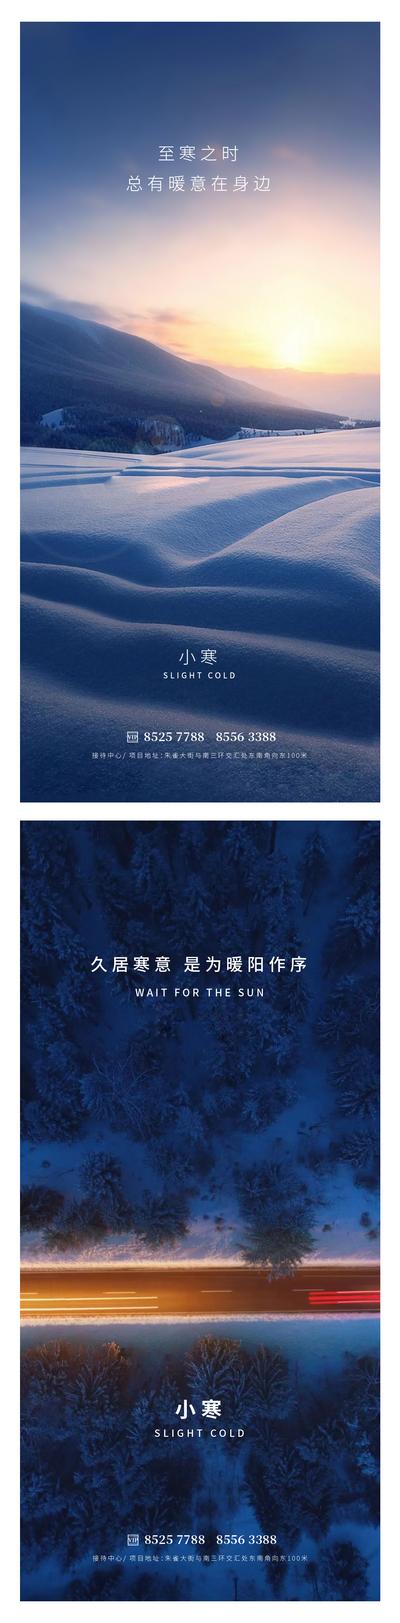 【南门网】广告 海报 地产 小寒 节气太阳 雪山 雪地 树林 公路 灯光 早晨